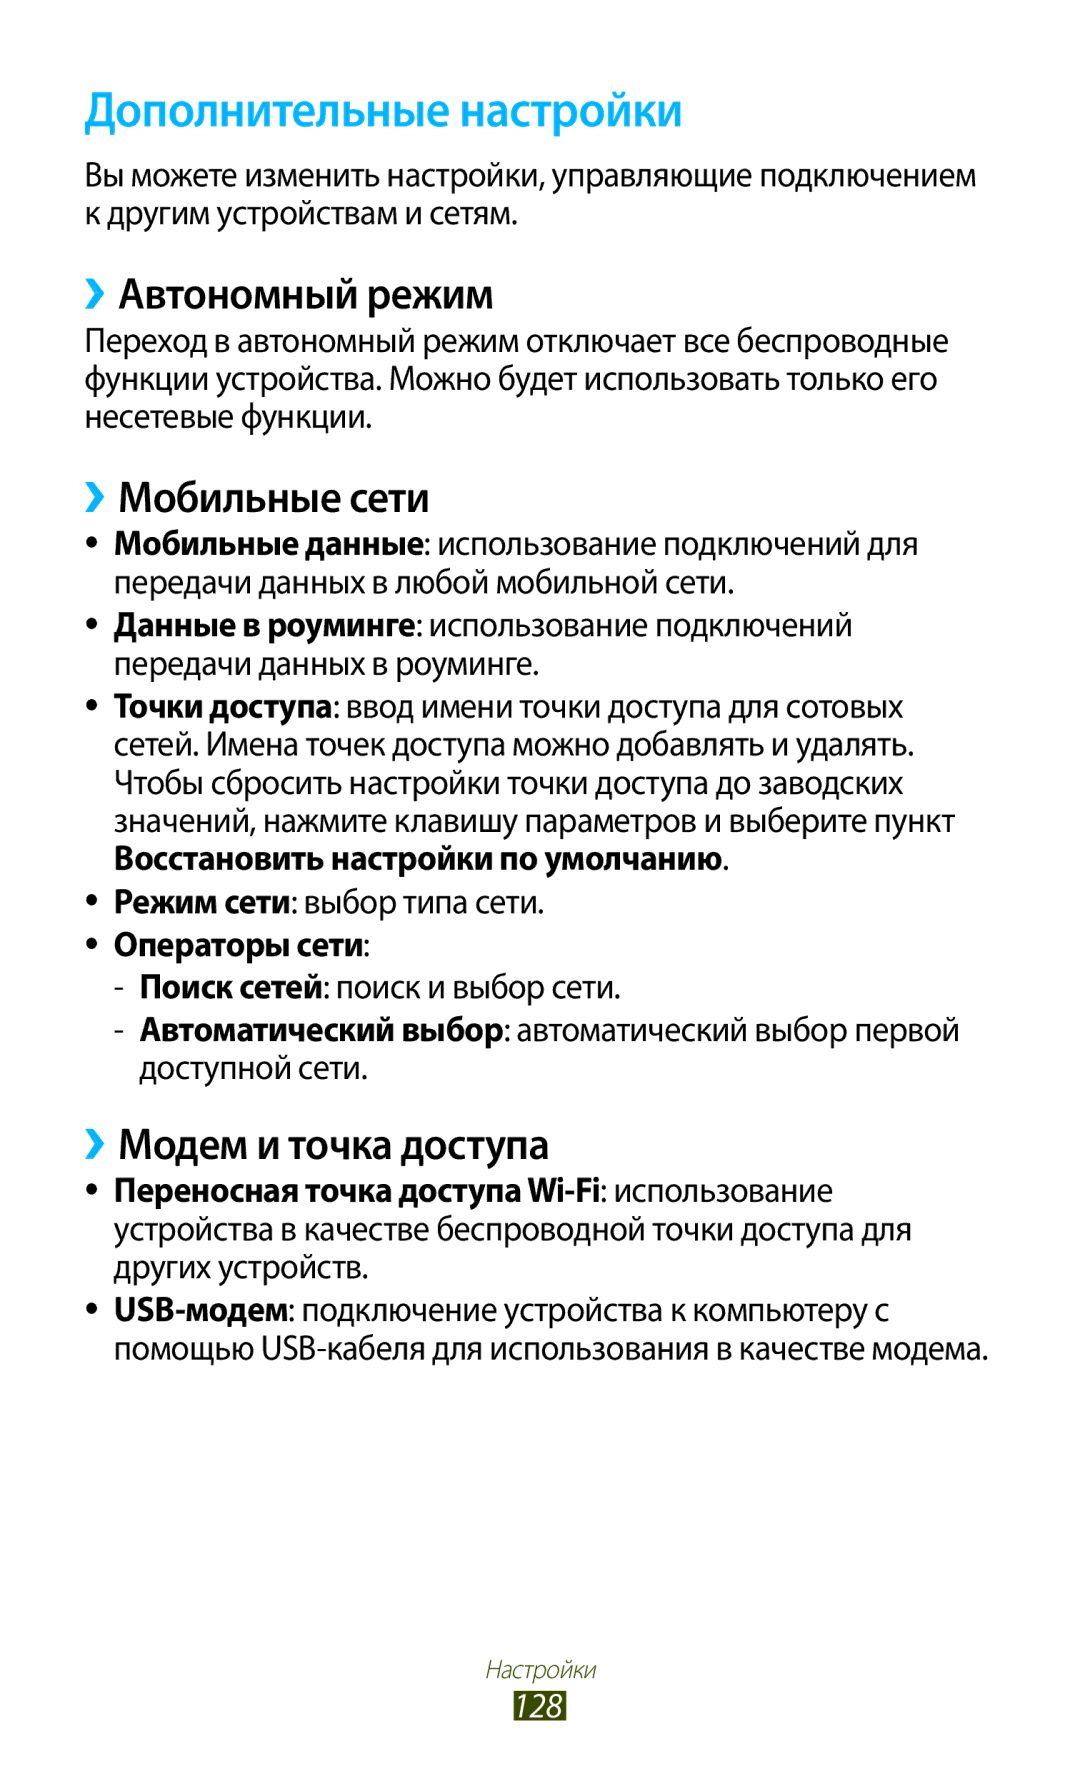 Samsung GT-S7560ZKASEB manual Дополнительные настройки, ››Автономный режим, ››Мобильные сети, ››Модем и точка доступа, 128 